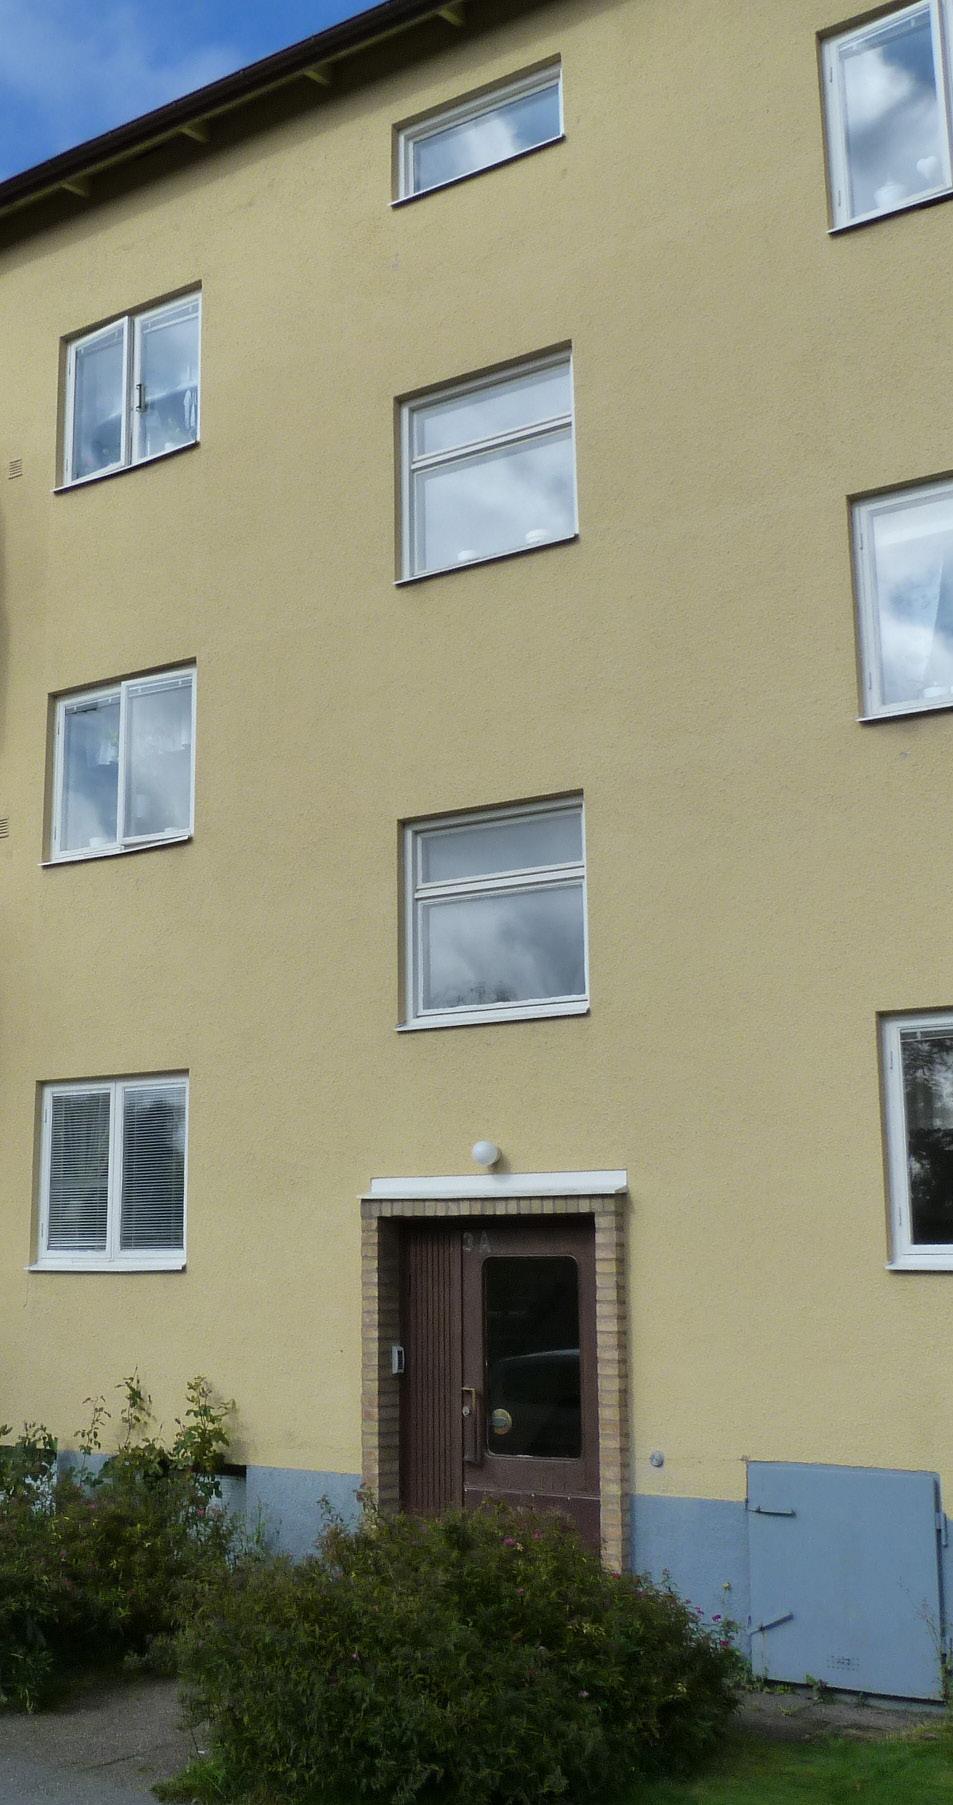 Kv. Lodjuret 2. Bebyggelse - fasader a. fönster b. balkonger c.